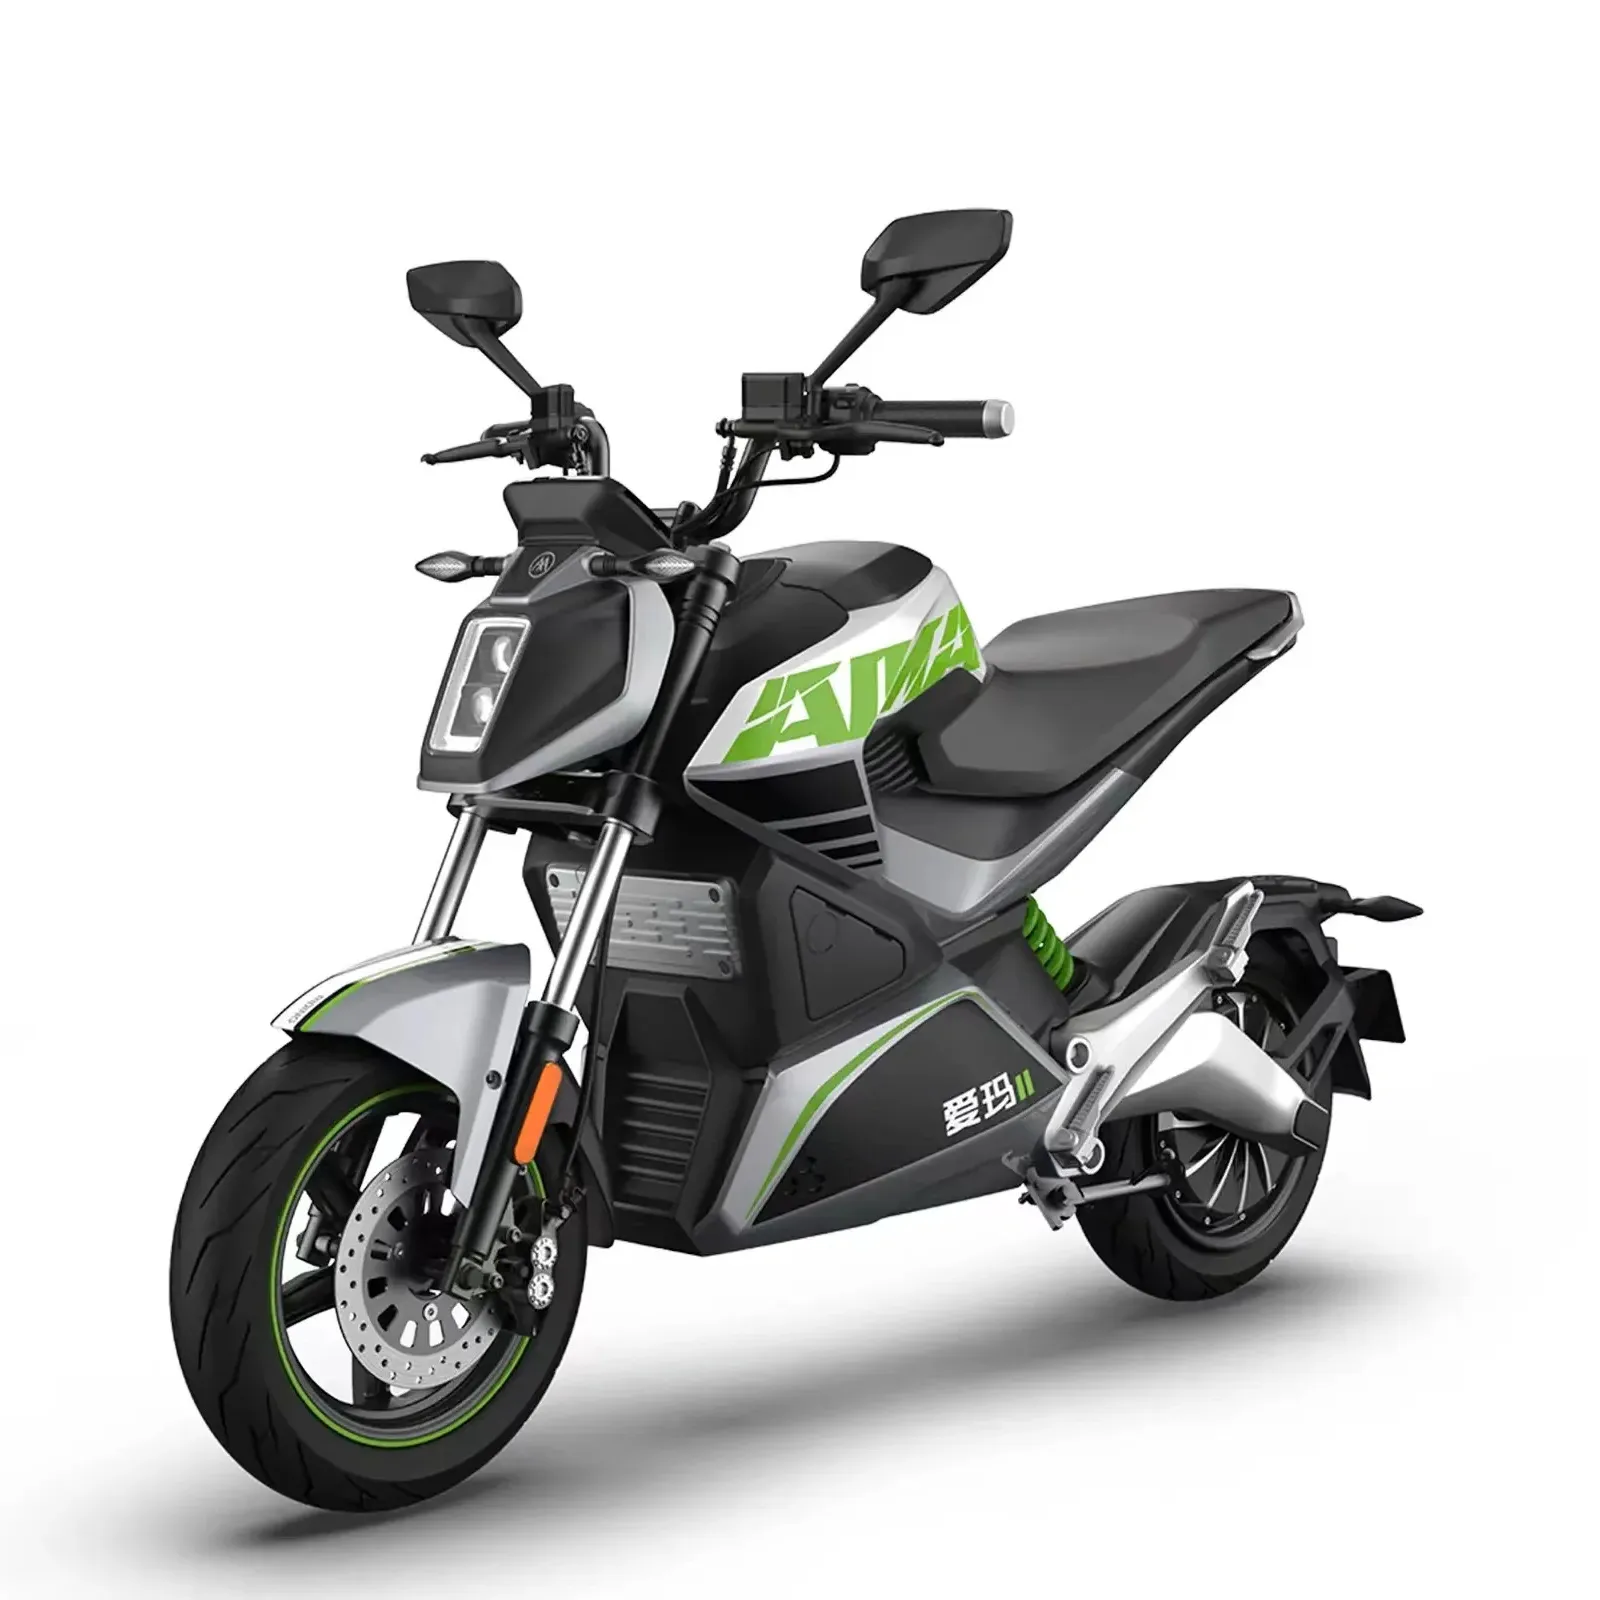 Motocicleta eléctrica barata 2024 Emma Dream Maker está equipada con un motor de rendimiento de 2500W con gran potencia y 3 modos de conducción